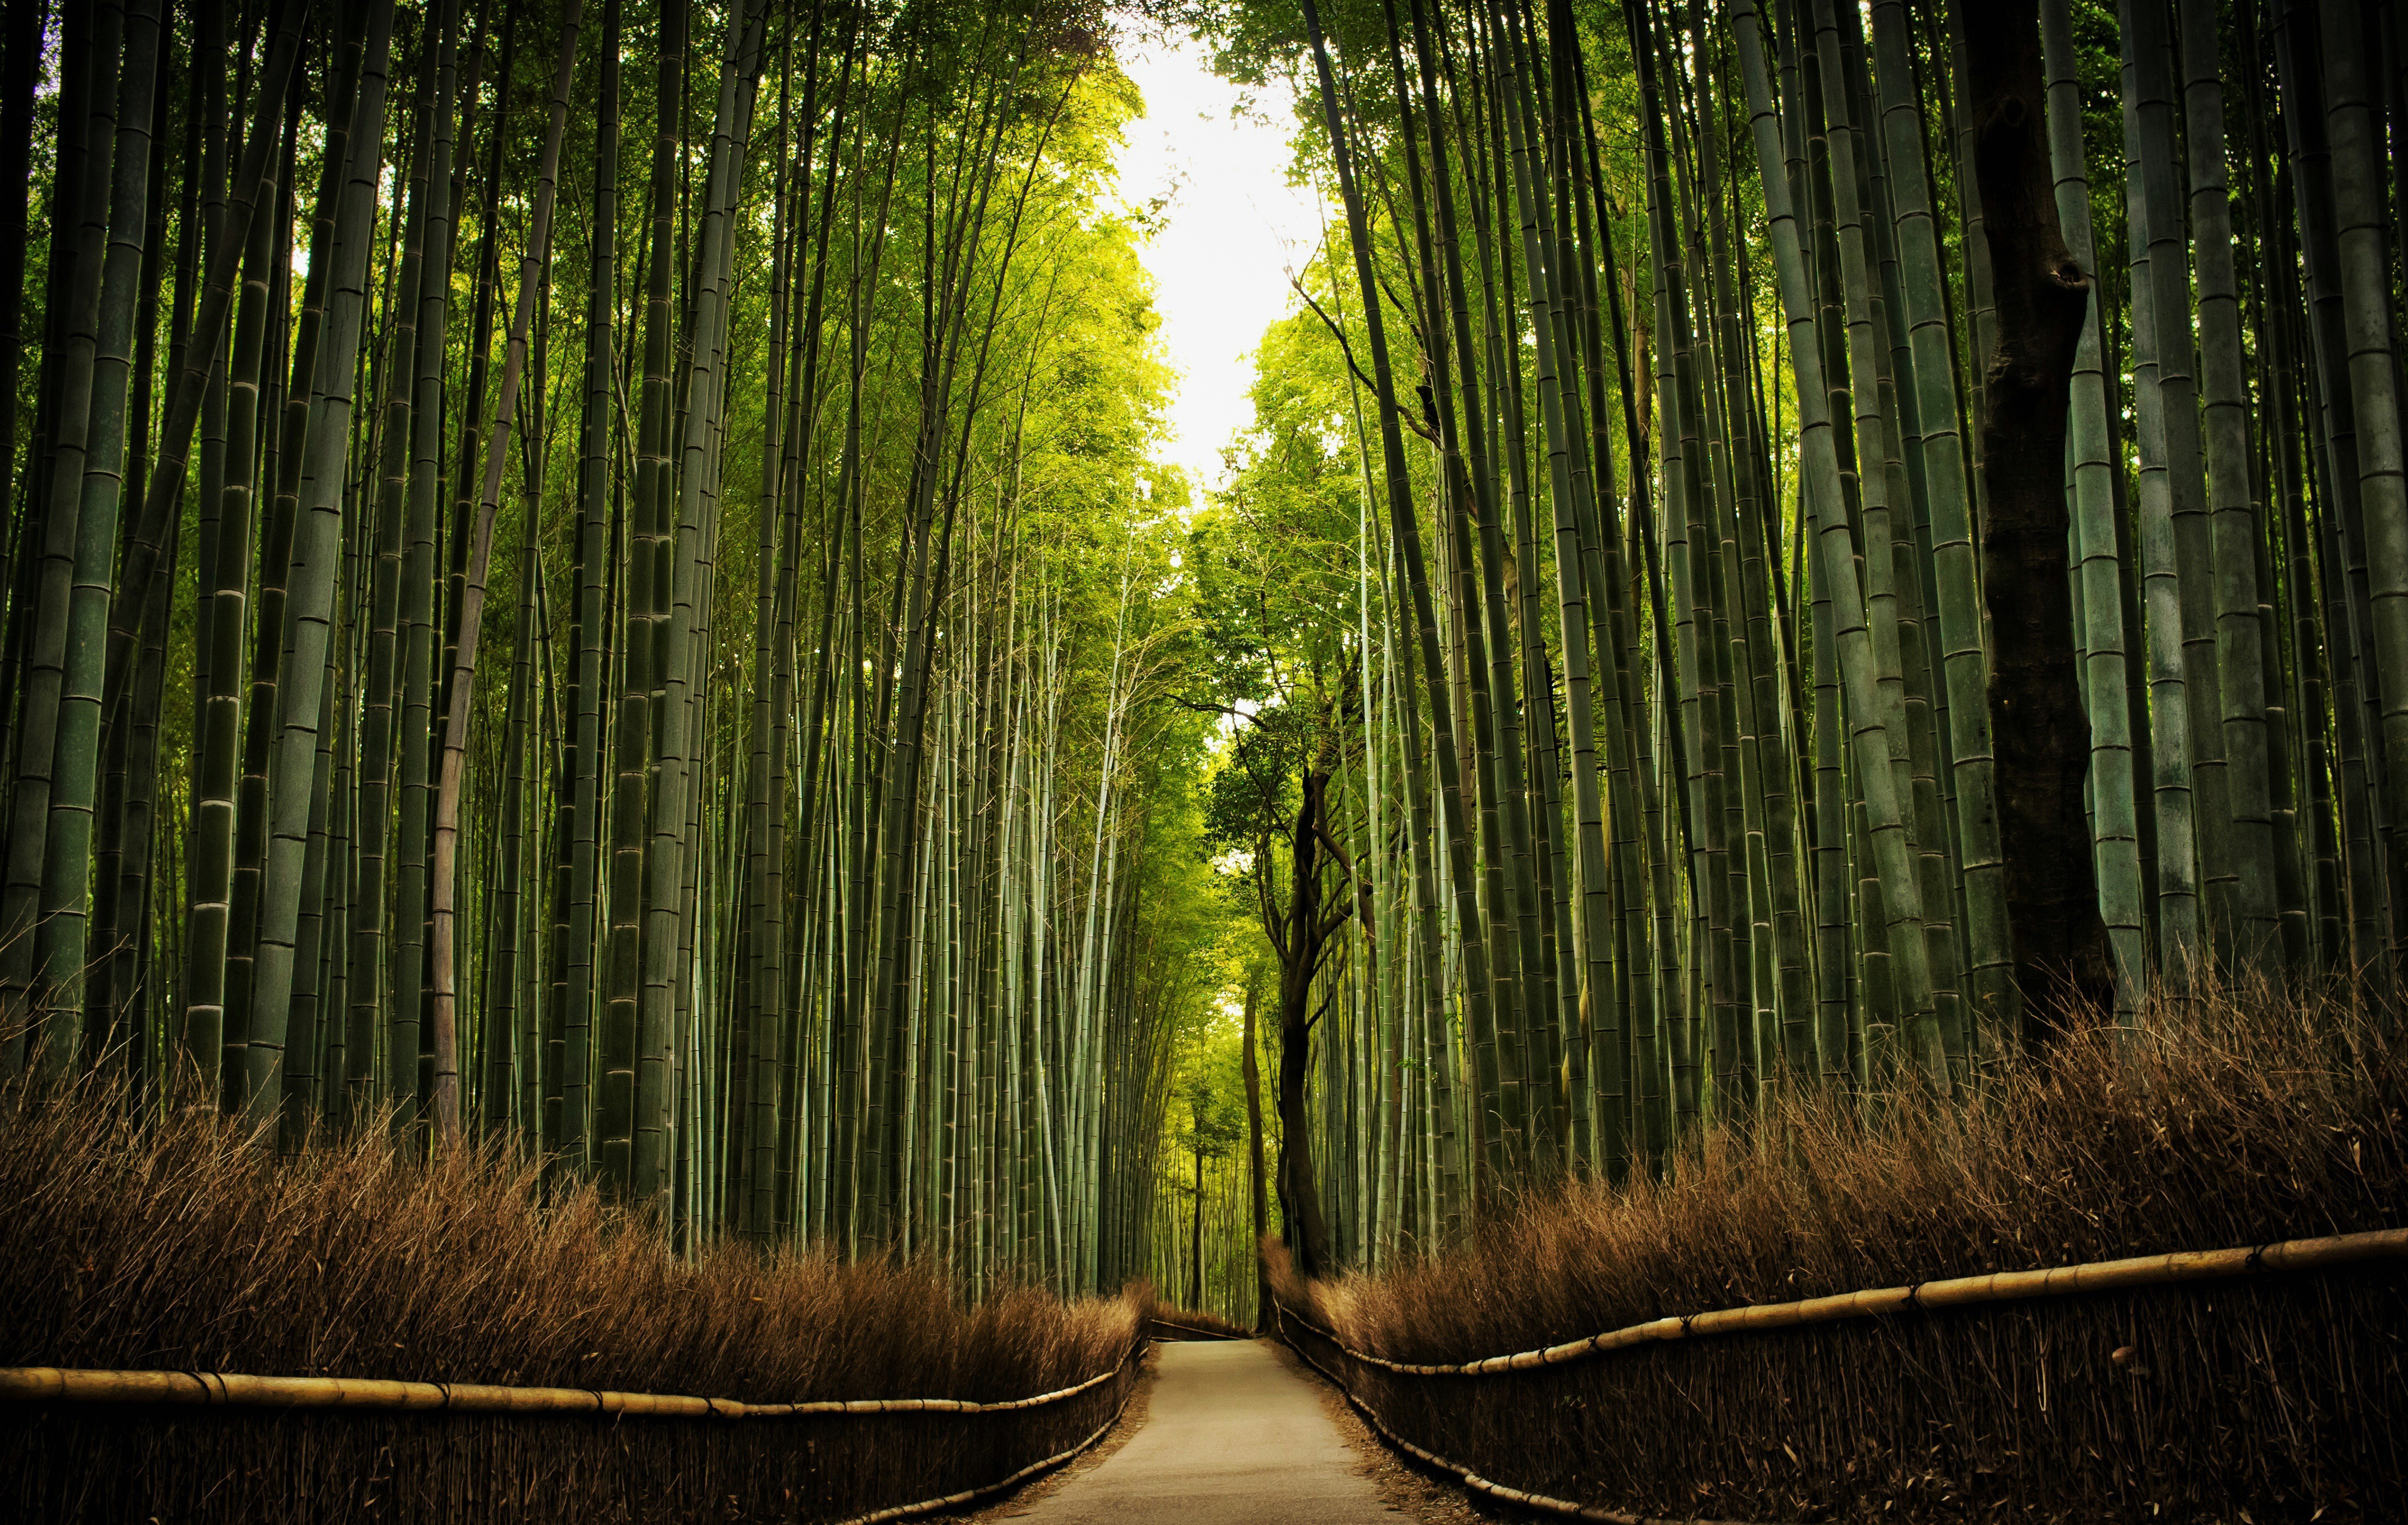 Tại nơi đây, du khách sẽ được trải nghiệm và thăm quan về cuộc sống truyền thống của nước Nhật với những khu vườn tre xanh tươi, đẹp mắt.